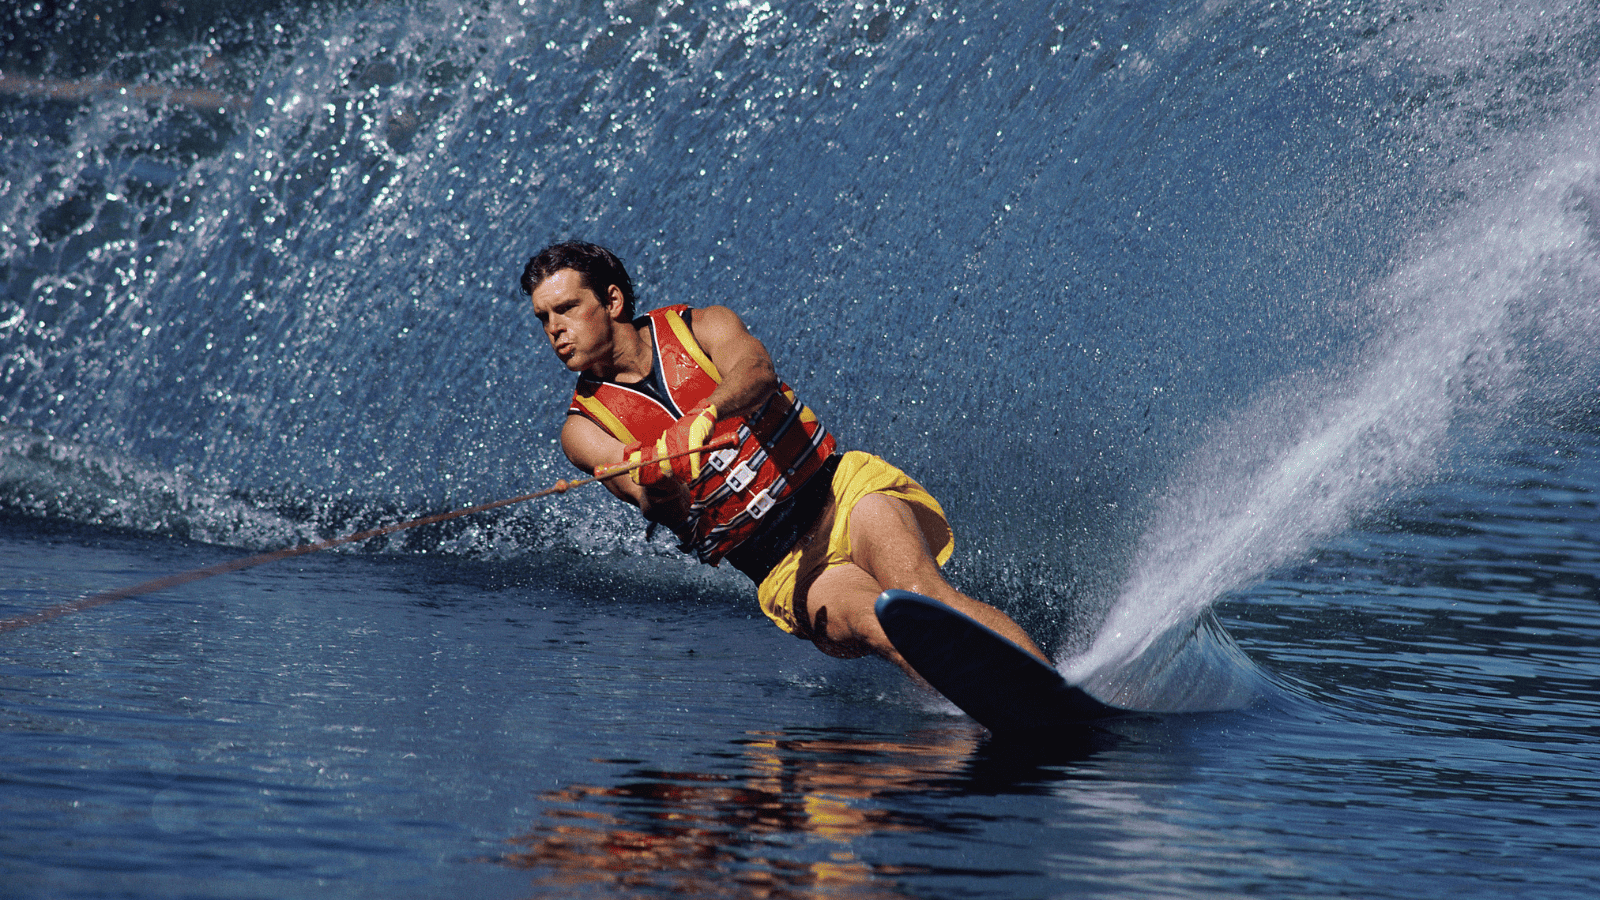 Man water skiing